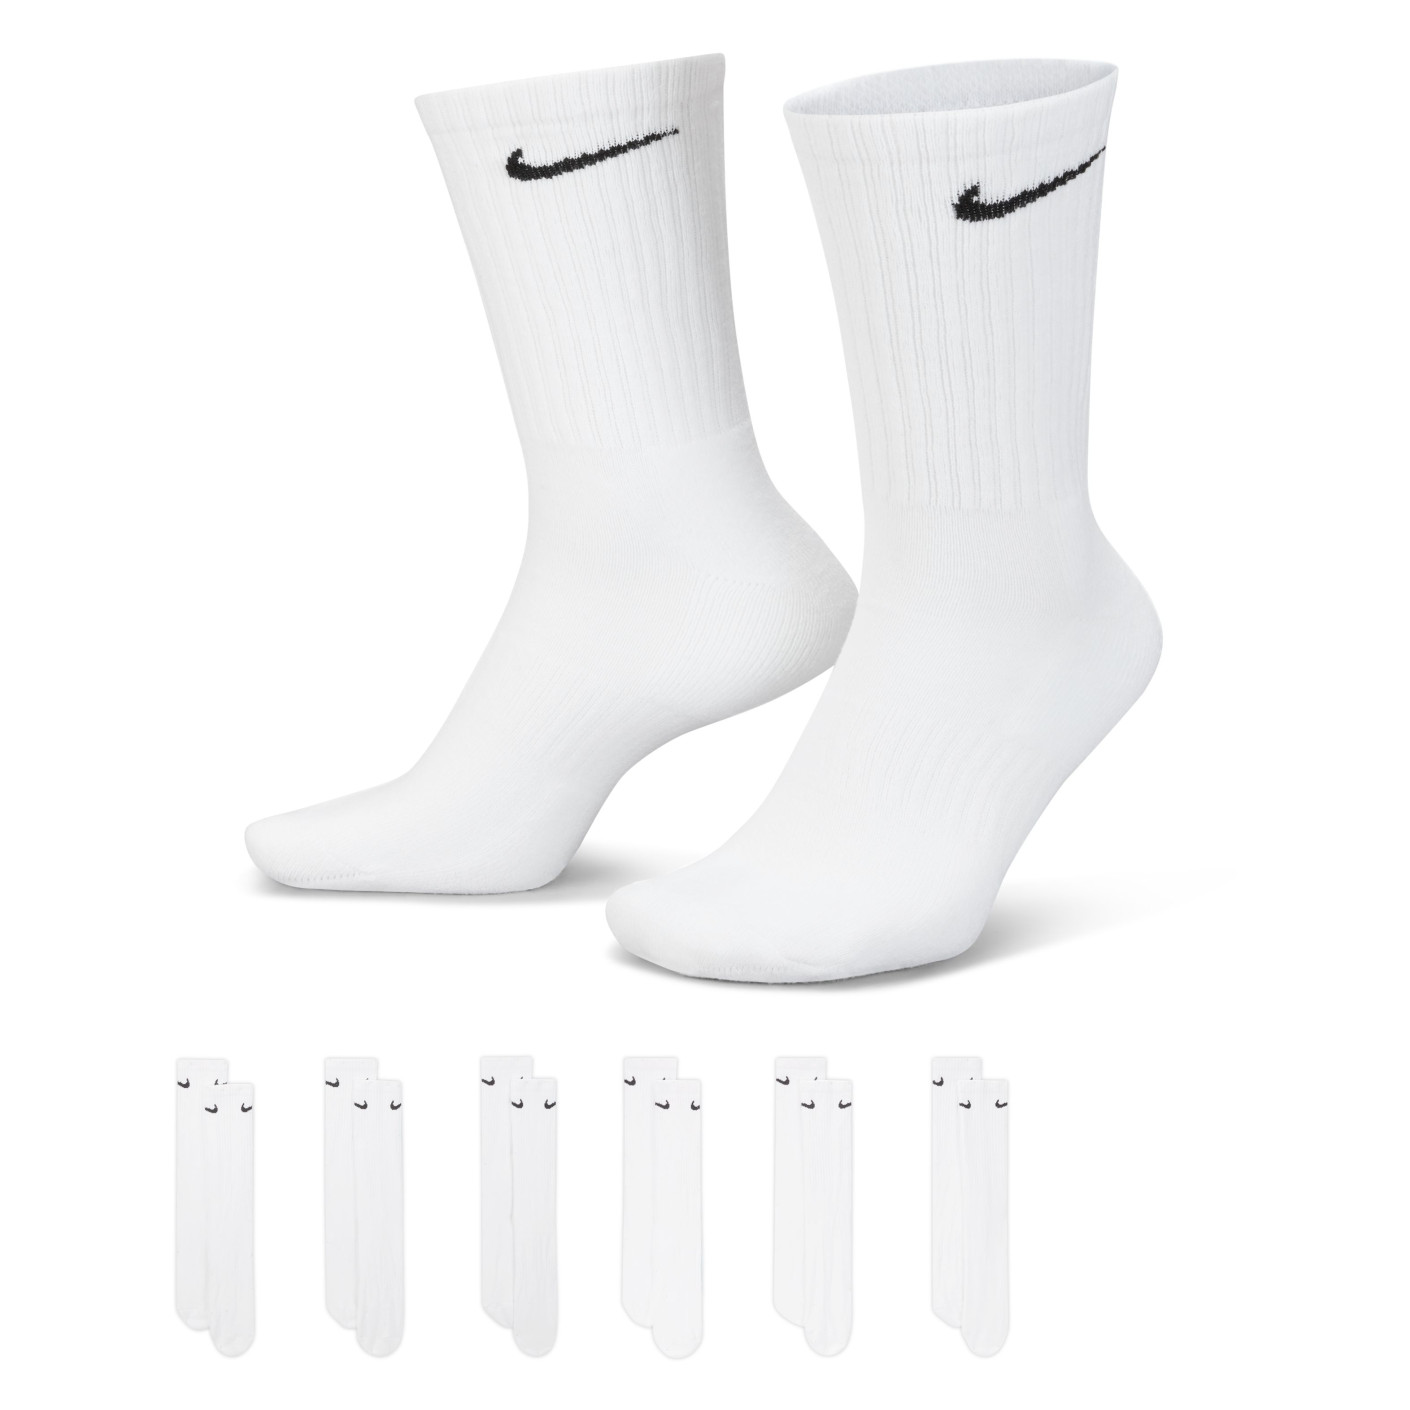 Chaussettes de sport rembourrées Nike Everyday, lot de 6, blanc/noir